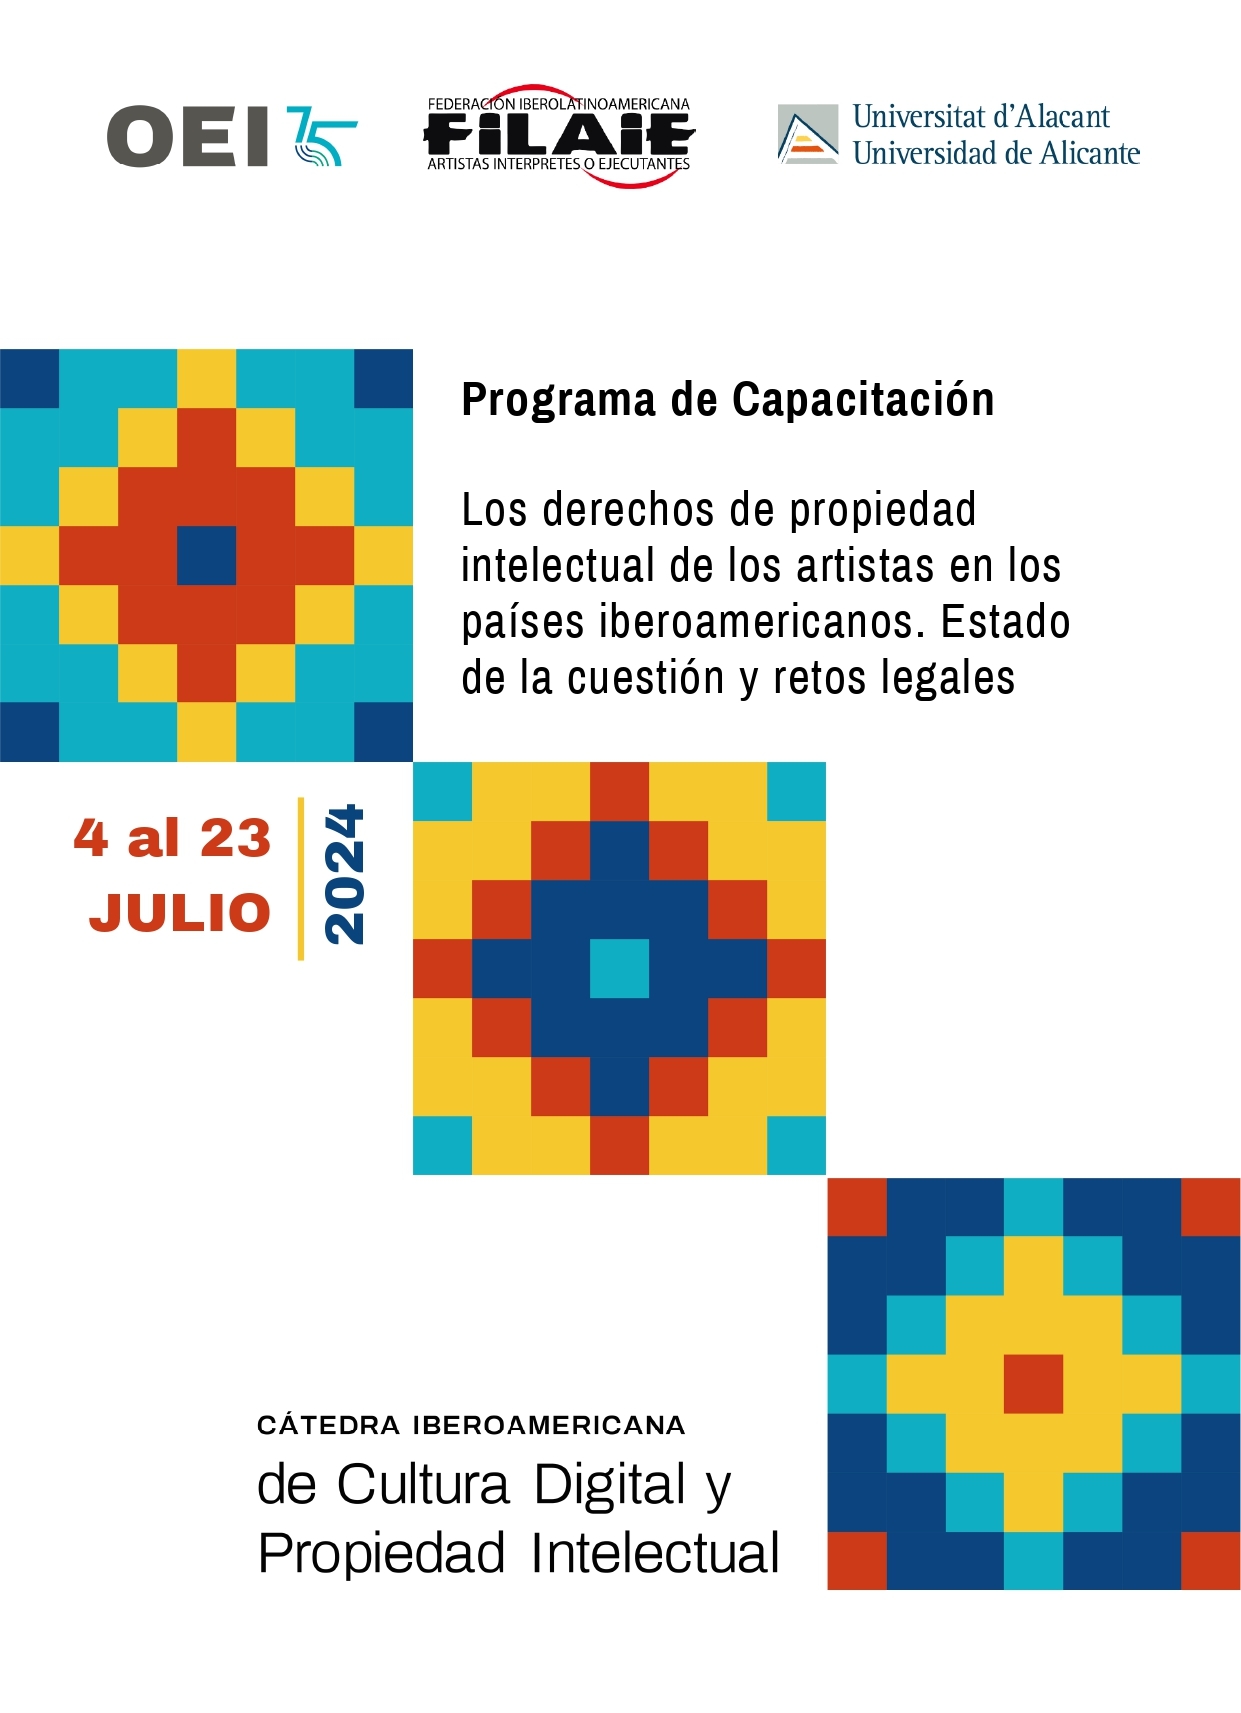 Los derechos de propiedad intelectual de los artistas en los países iberoamericanos: Estado de la cuestión y retos legales (Sesión 1)